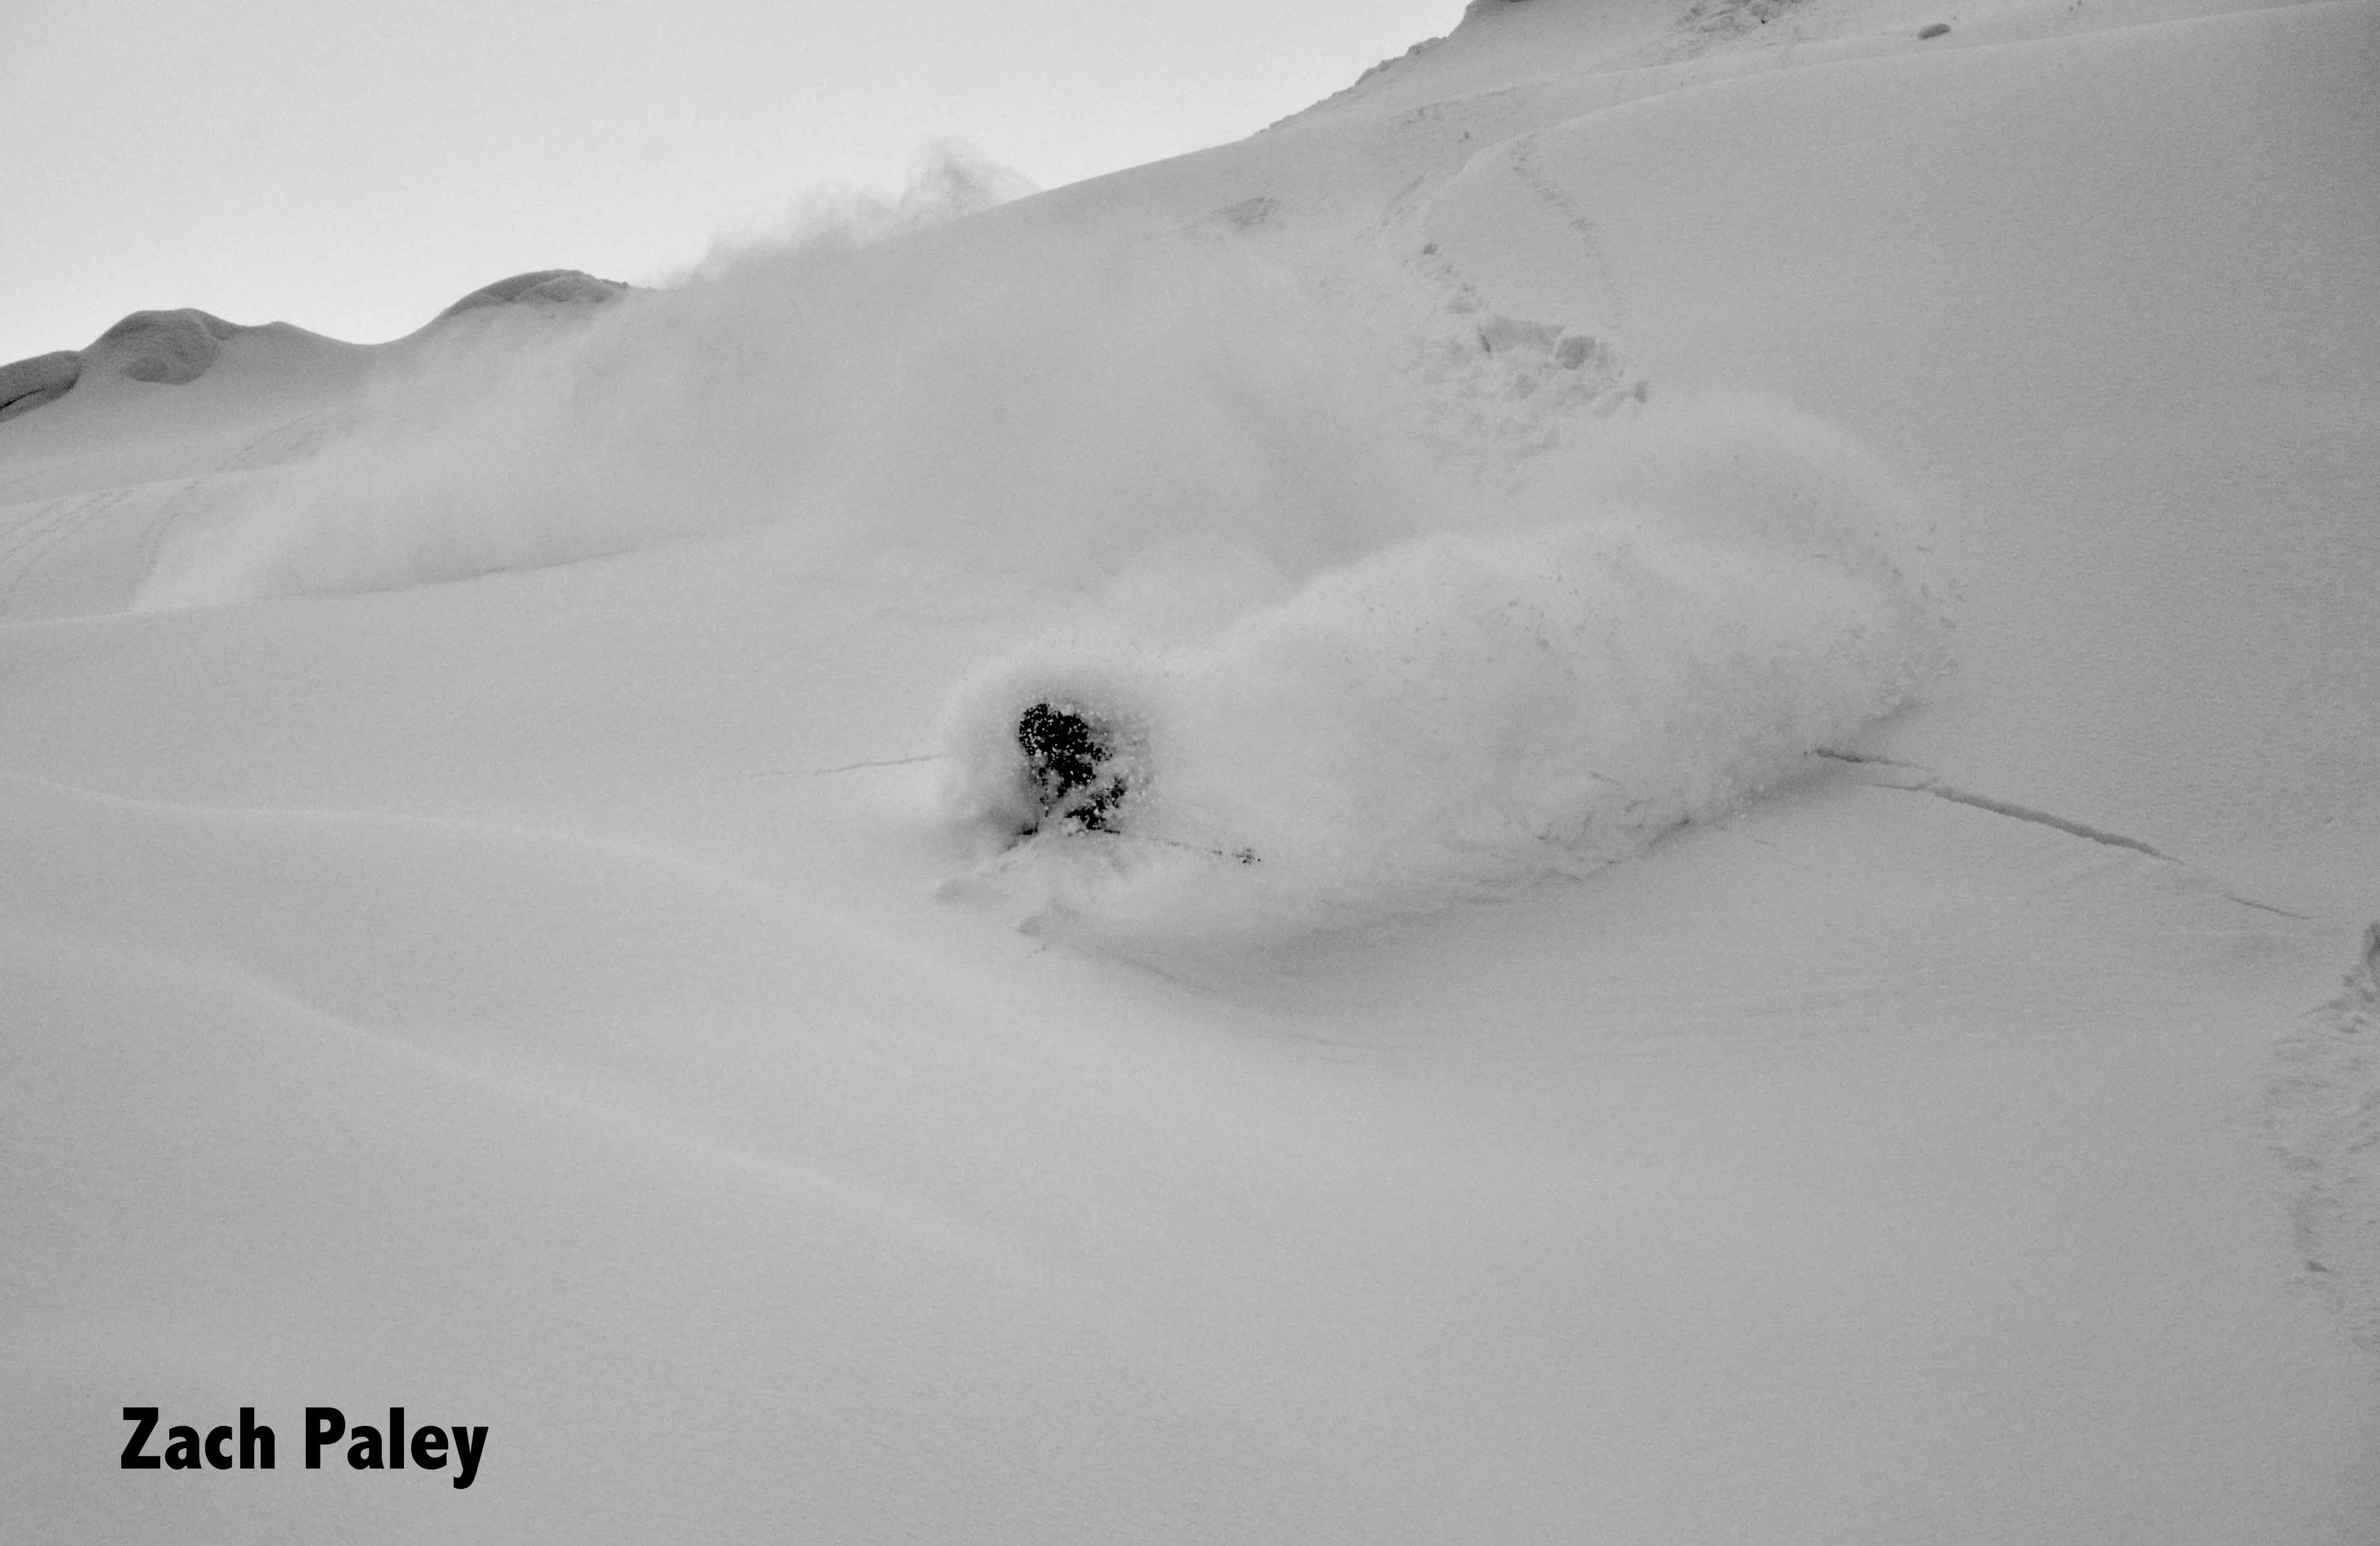 Ski bum Valhalla. skier: miles clark photo: zach paley